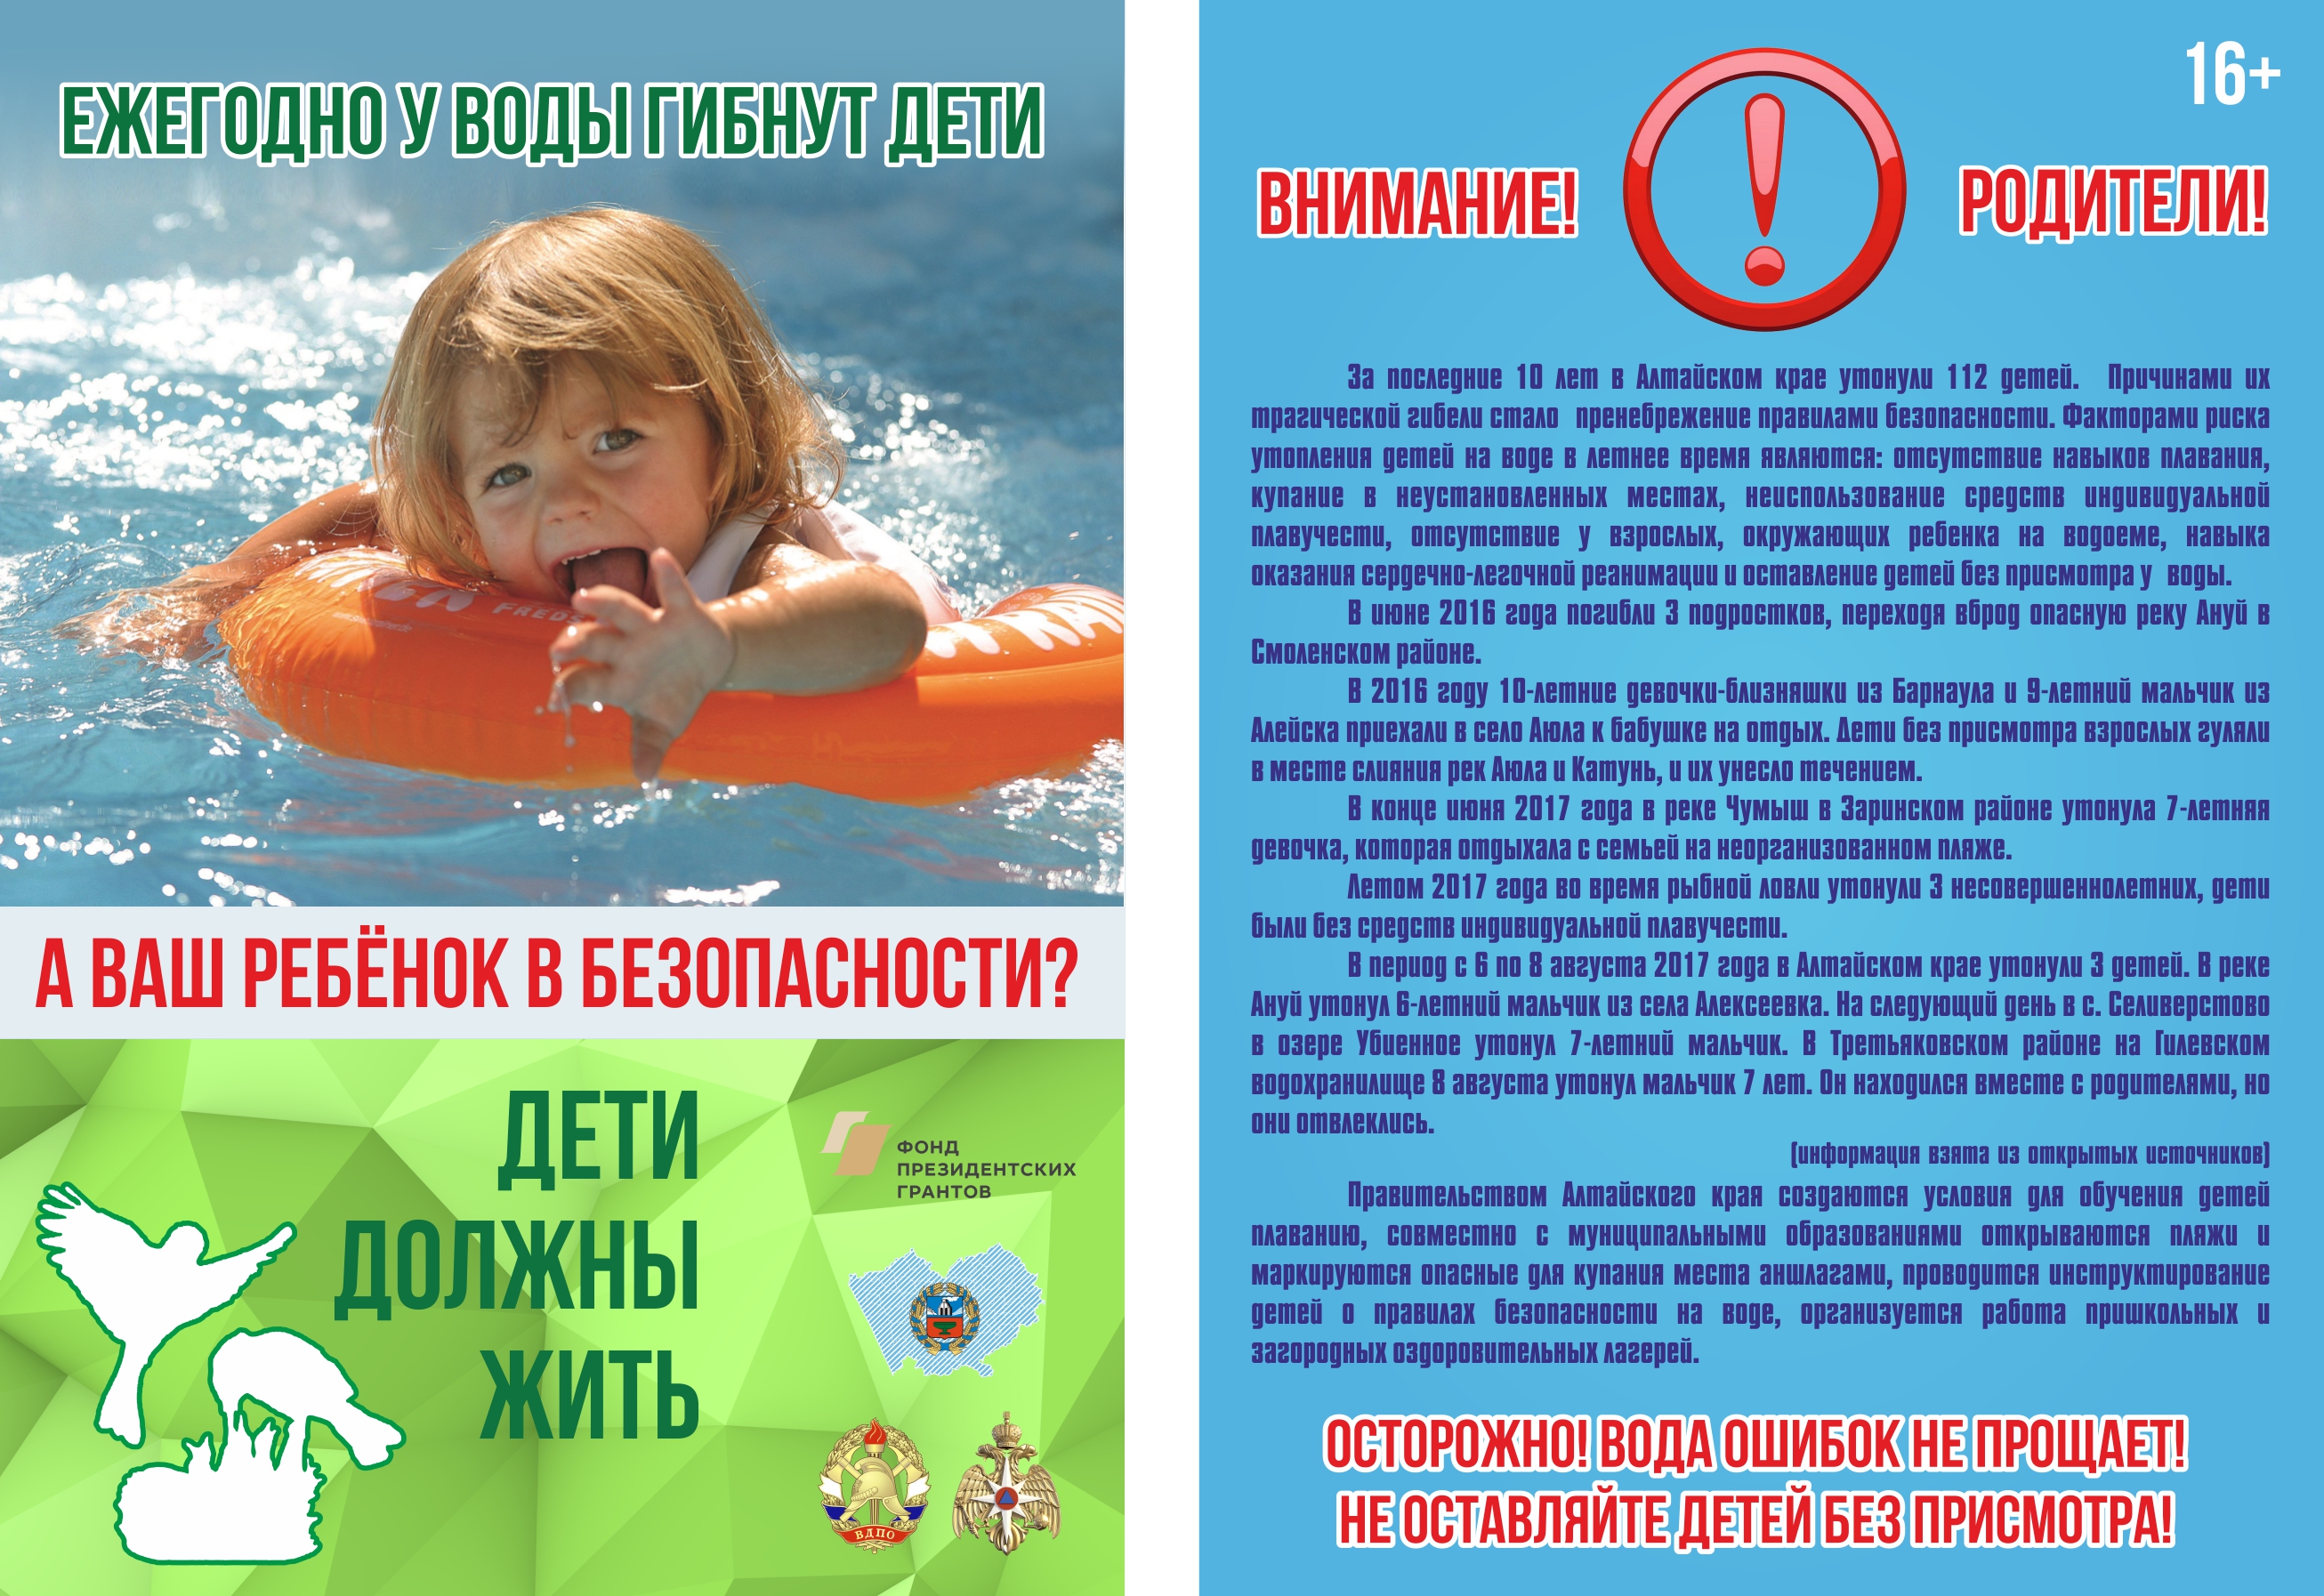 Безопасное поведение детей на водных объектах. Безопасность на водоемах летом для детей. Безопасность на вордоемахдля детей. Безопасность на воде для детей. Безопасность детей на водоемах в летний период.